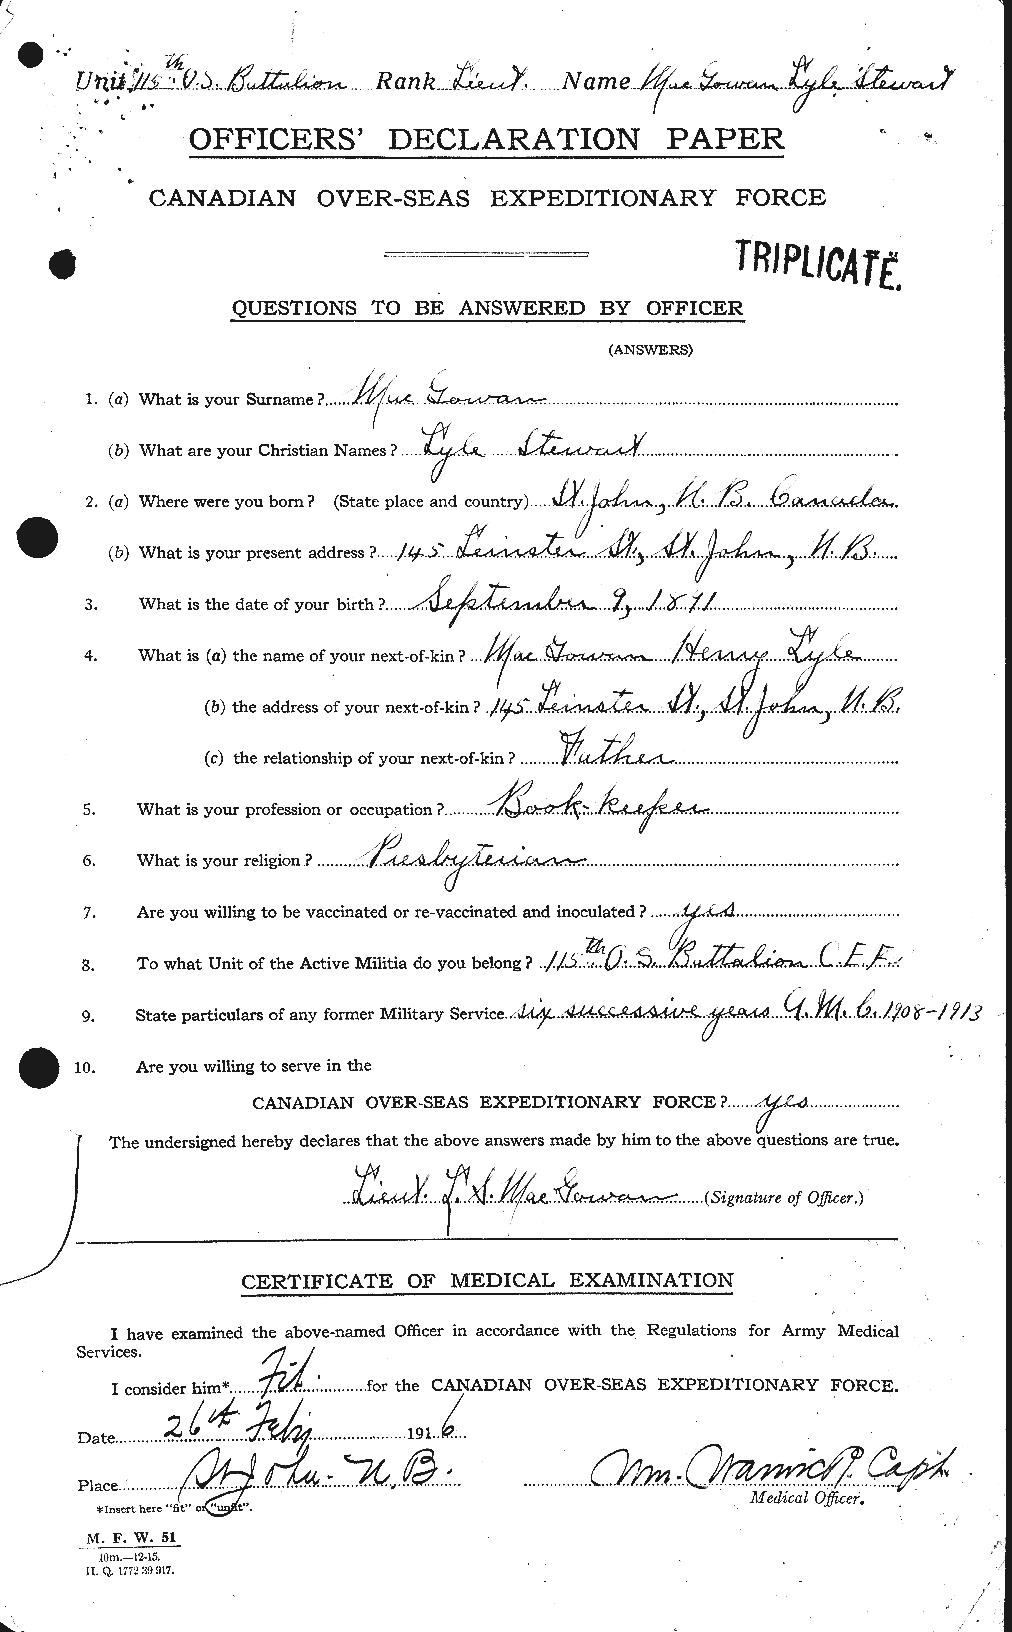 Dossiers du Personnel de la Première Guerre mondiale - CEC 523188a